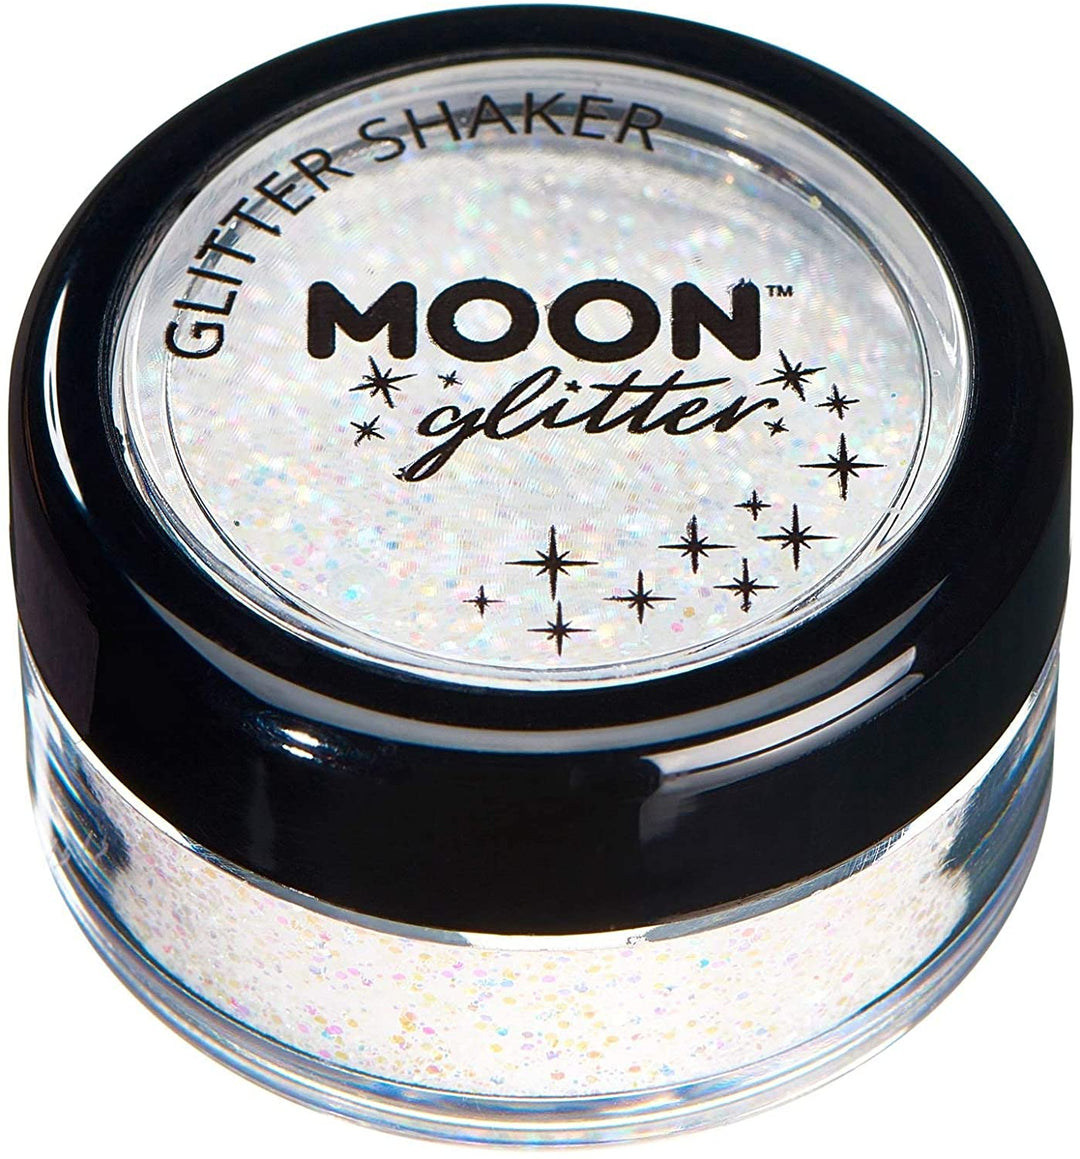 Pastell-Glitzerstreuer von Moon Glitter – Weiß – kosmetischer Festival-Make-up-Glitzer für Gesicht, Körper, Nägel, Haare, Lippen – 5 g